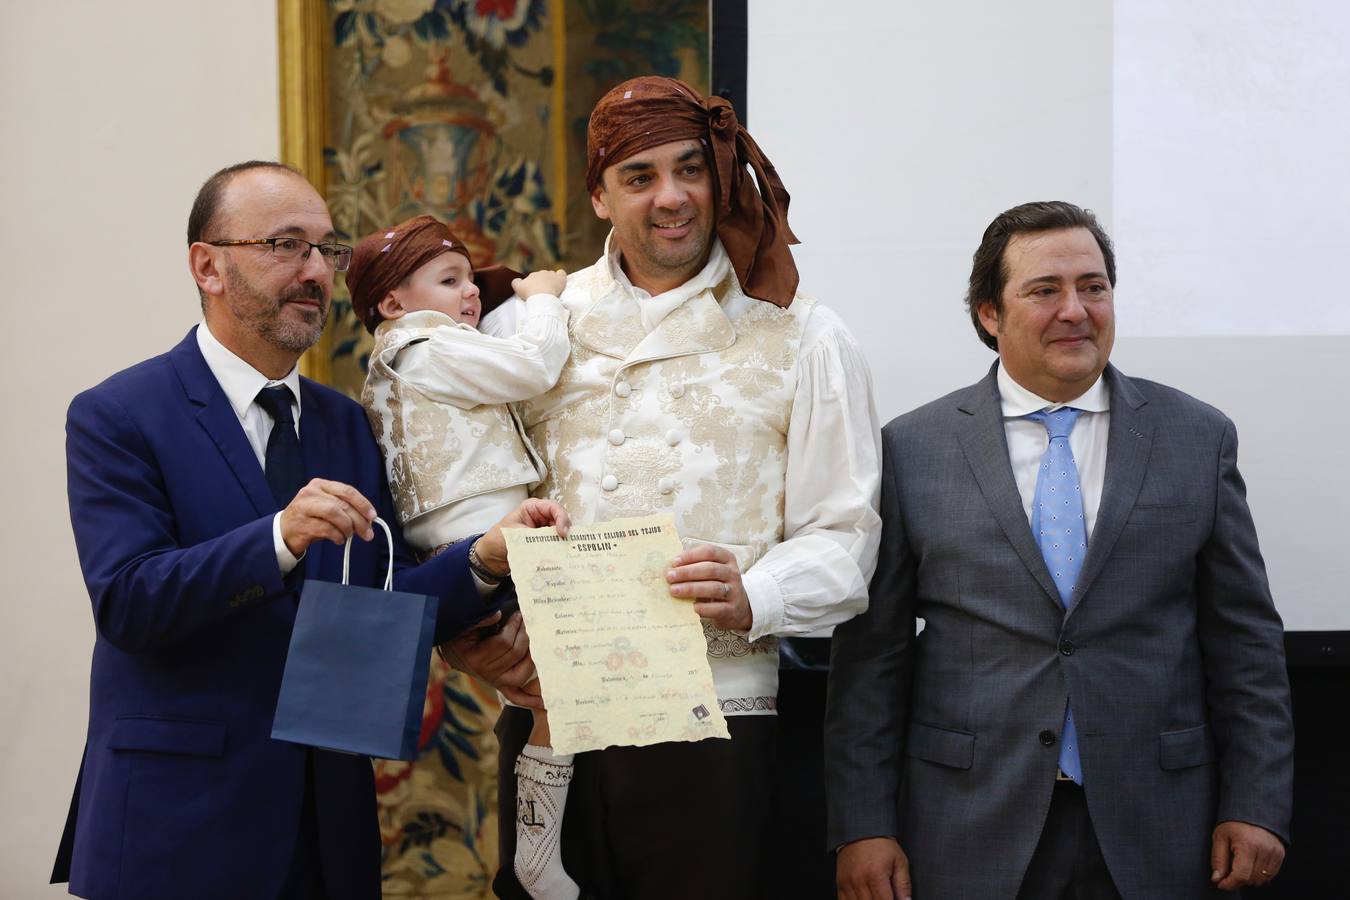 Fotos: Vives y Marí organiza una gala para entregar los certificados de espolines